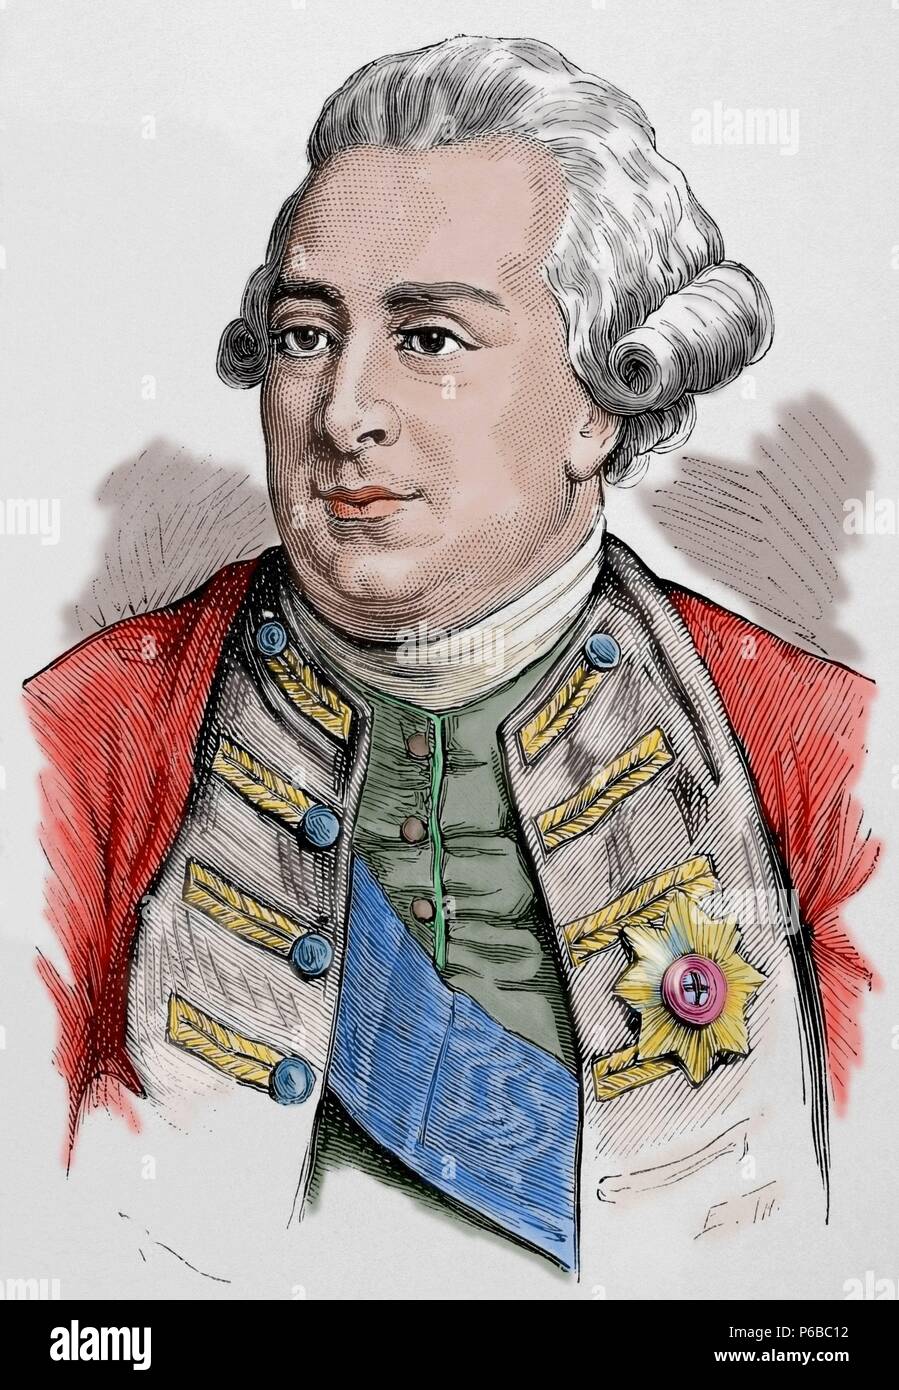 George III (1738-1820). König von Großbritannien und Irland, später König des Vereinigten Königreichs und von Hannover. Farbige Gravur "nuestro Siglo", 1883. Stockfoto